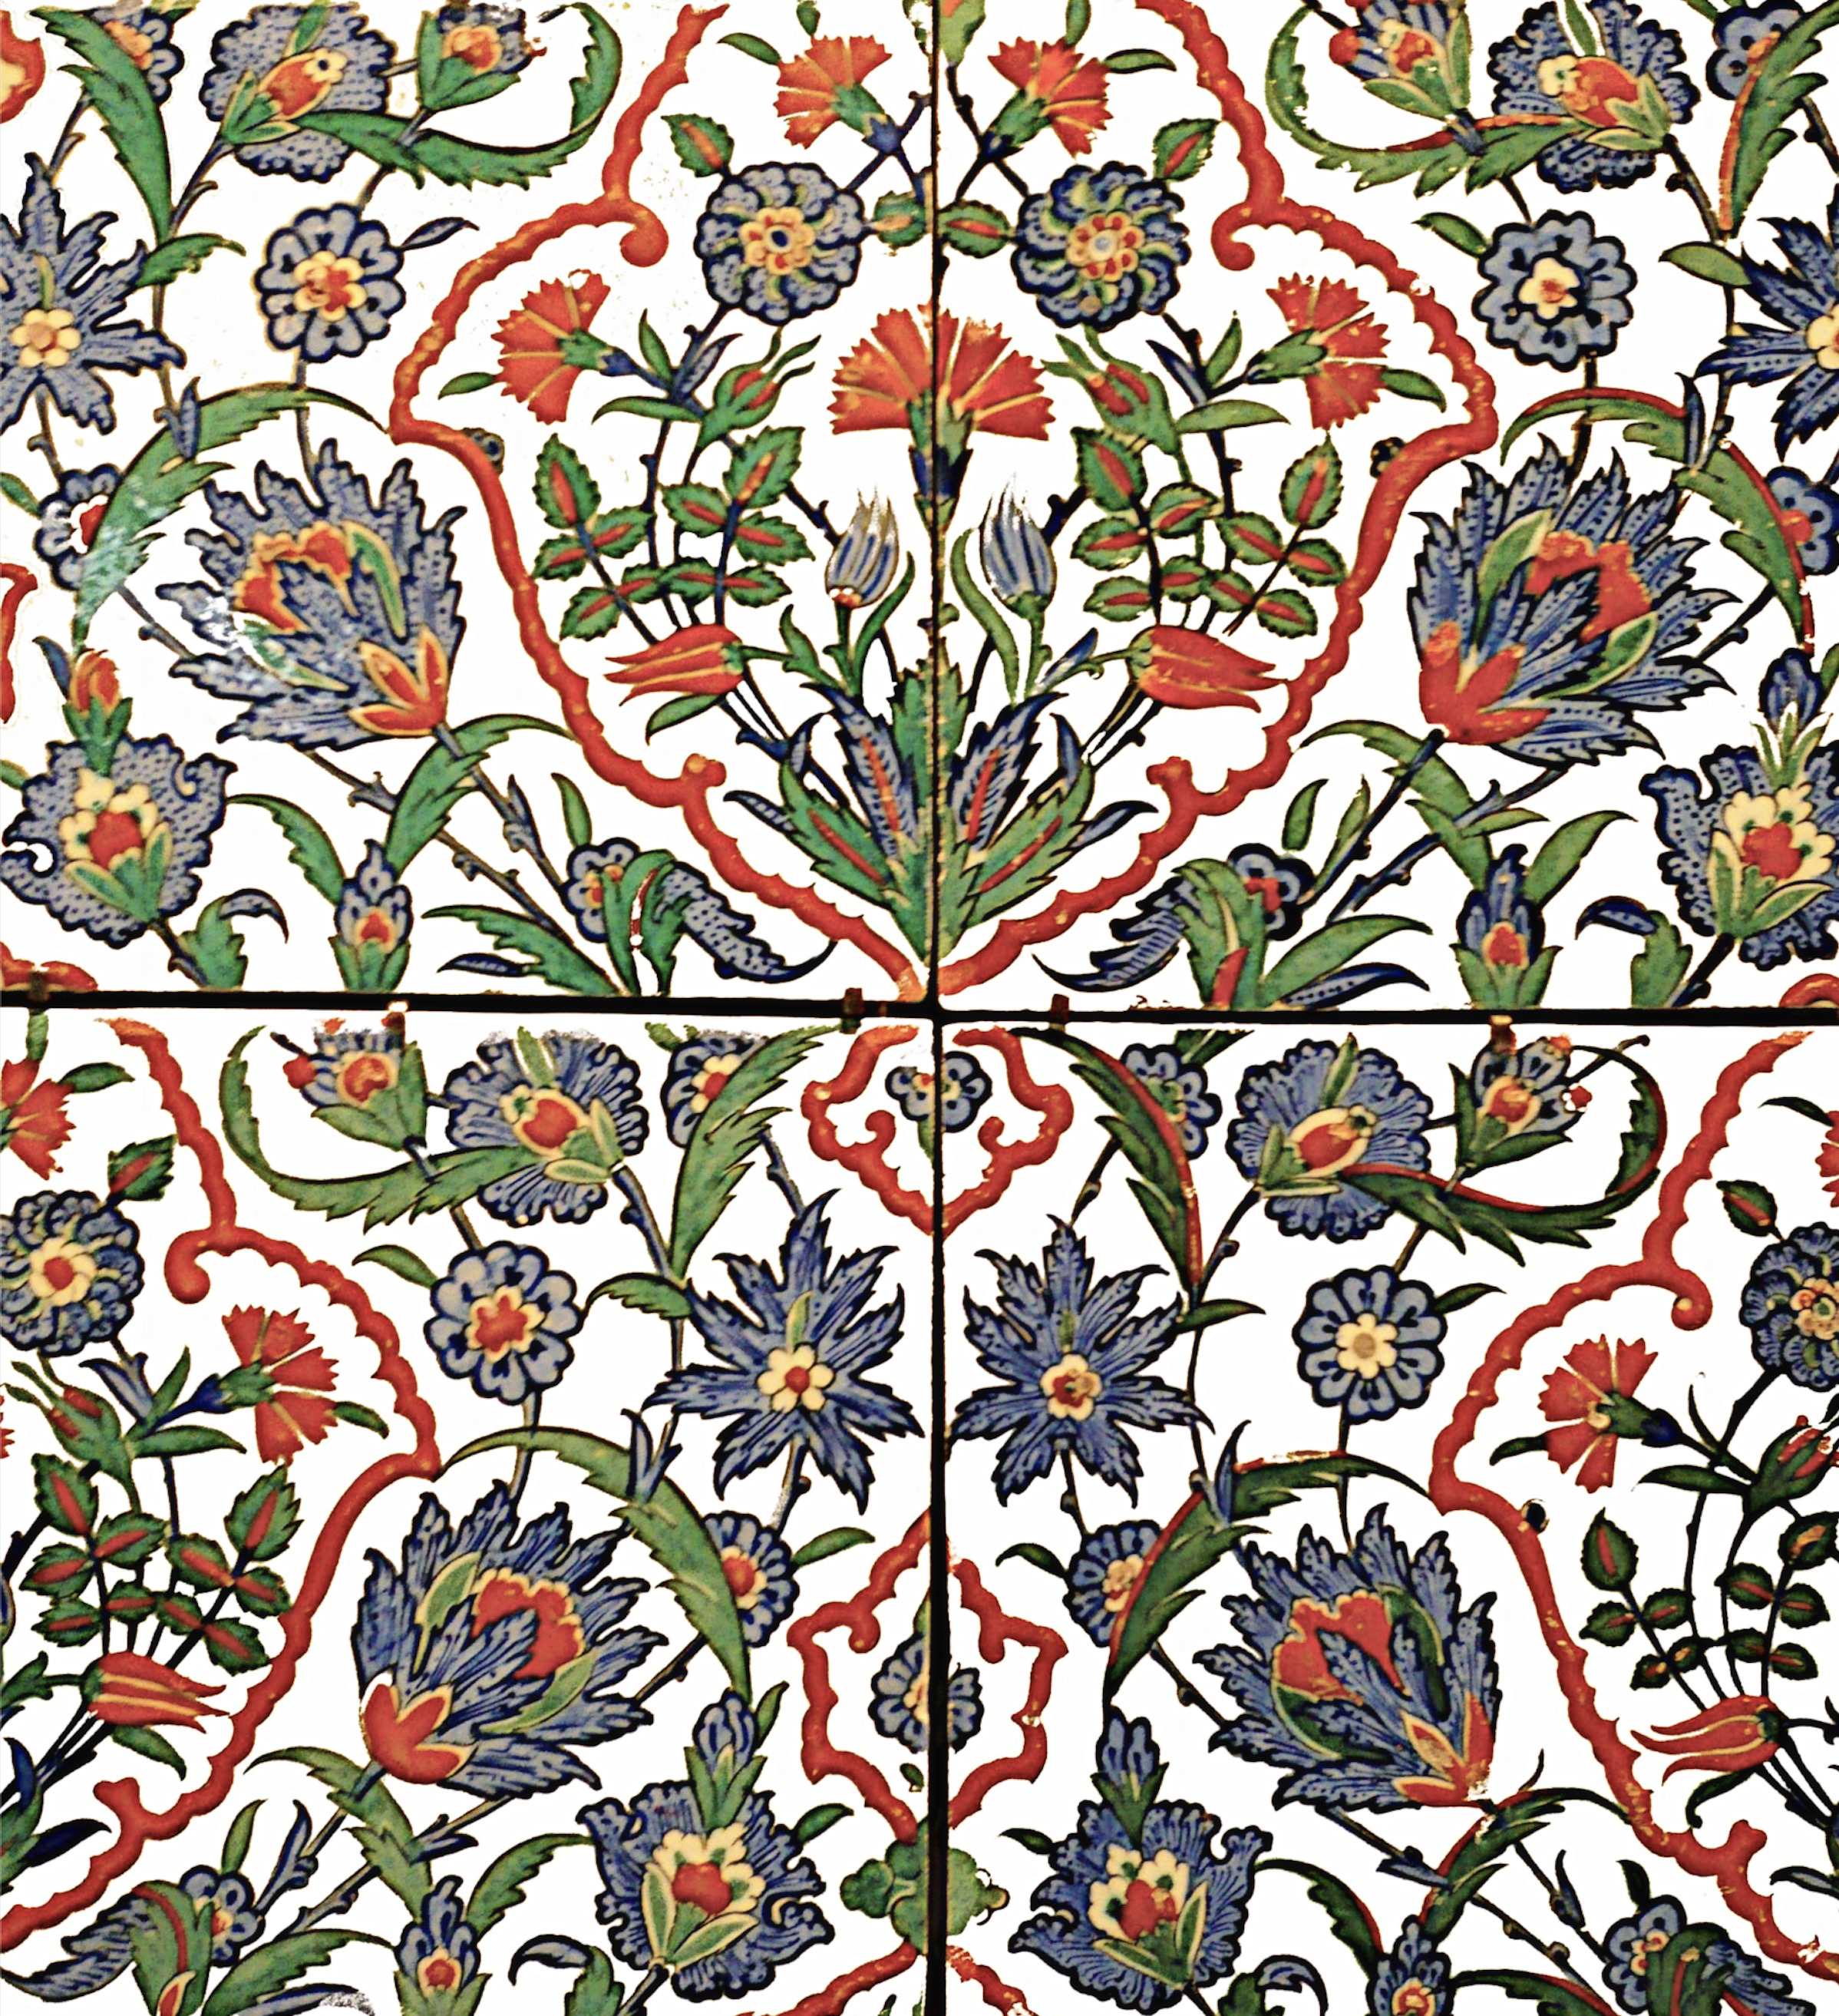 Carreaux de céramique ottomane (16e siècle)